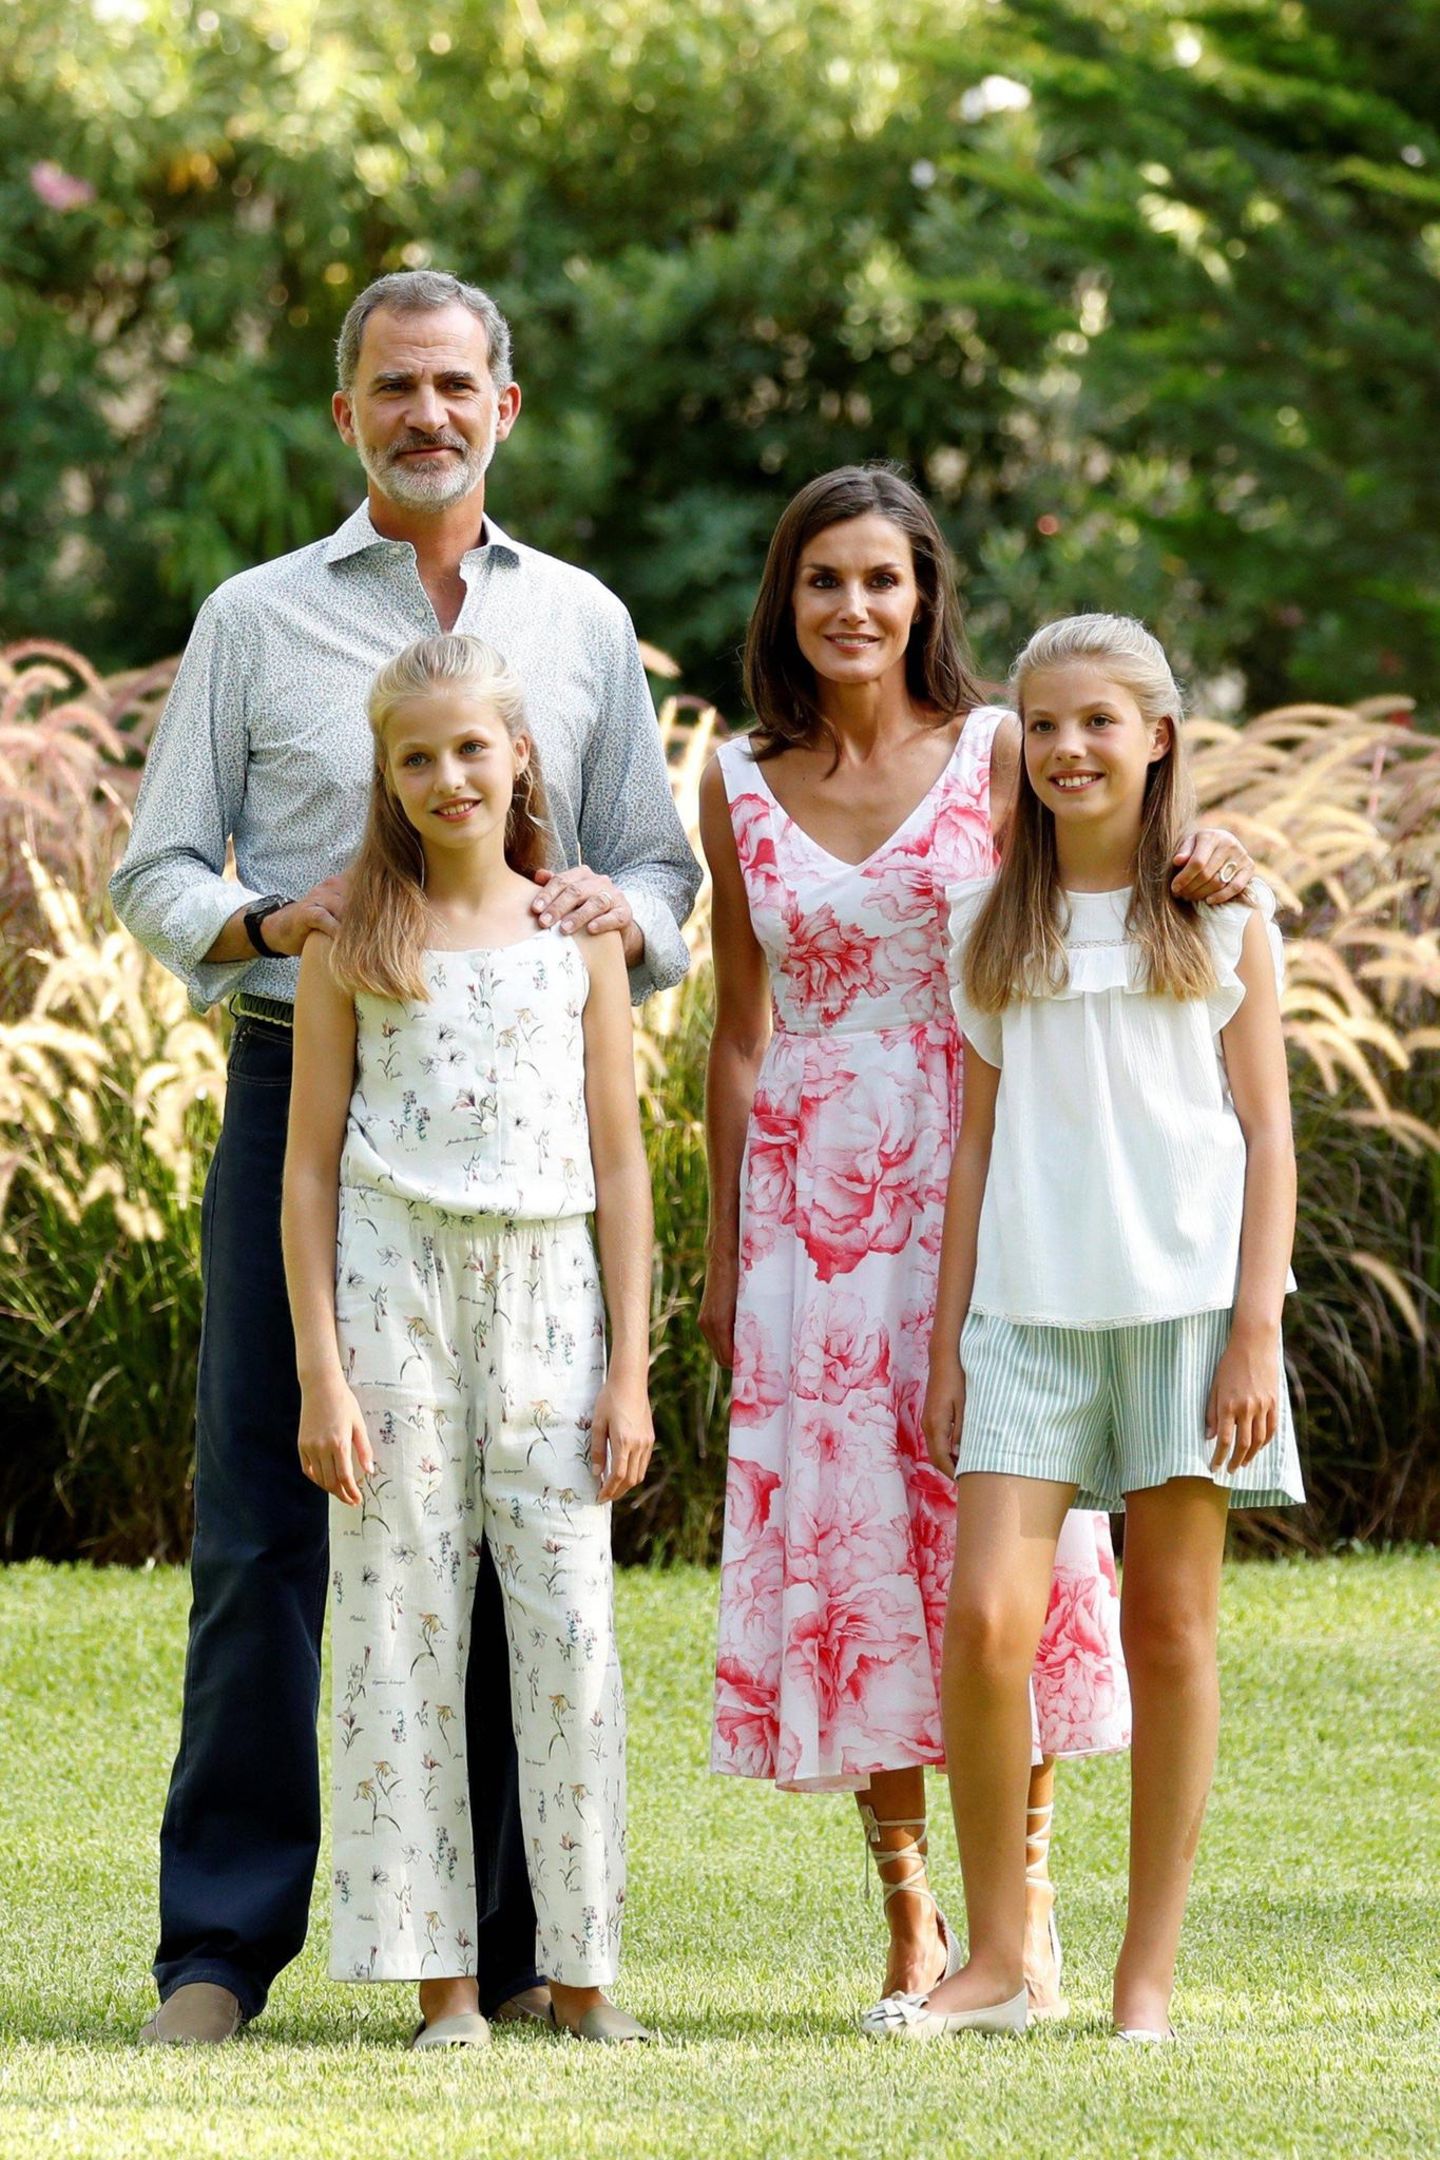 4. August 2019  König Felipe und Königin Letizia posieren mit ihren Töchtern Prinzessin Leonor und Prinzessin Sofía beim traditionellen Sommer-Fototermin im Garten des Marivent-P​alastes in Palma de Mallorca.